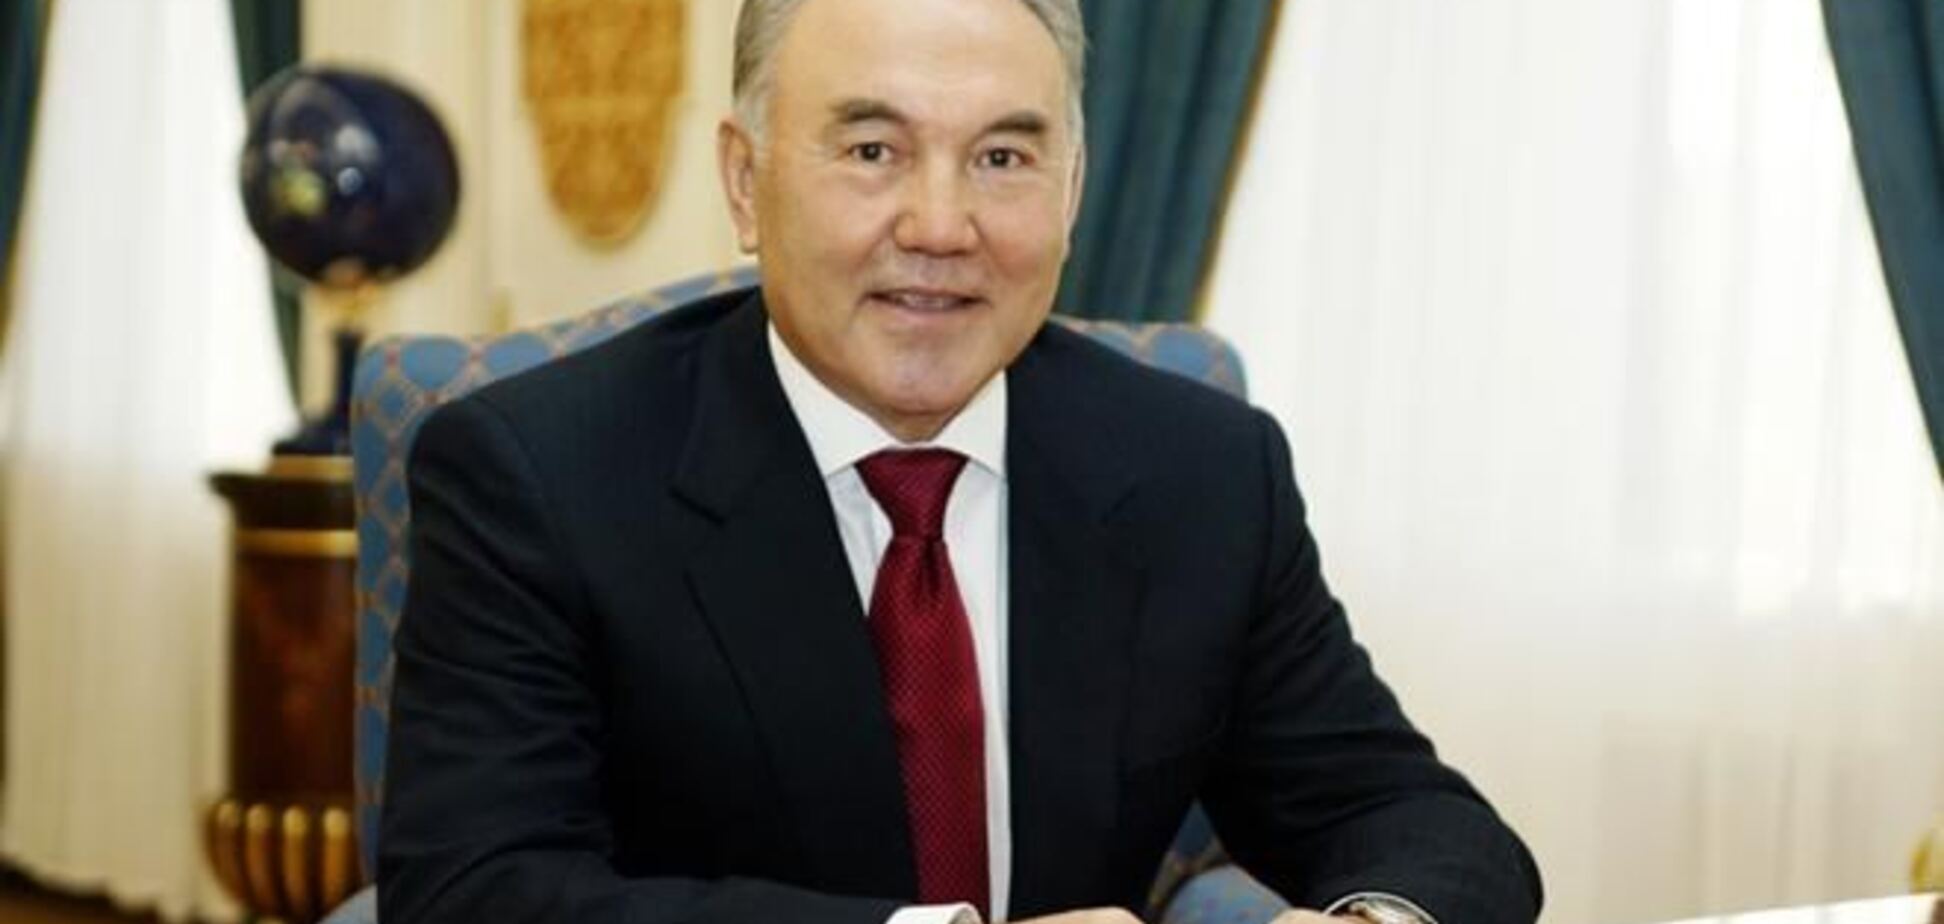 Безработица среди молодежи стала причиной обострения ситуации в Украине – Назарбаев